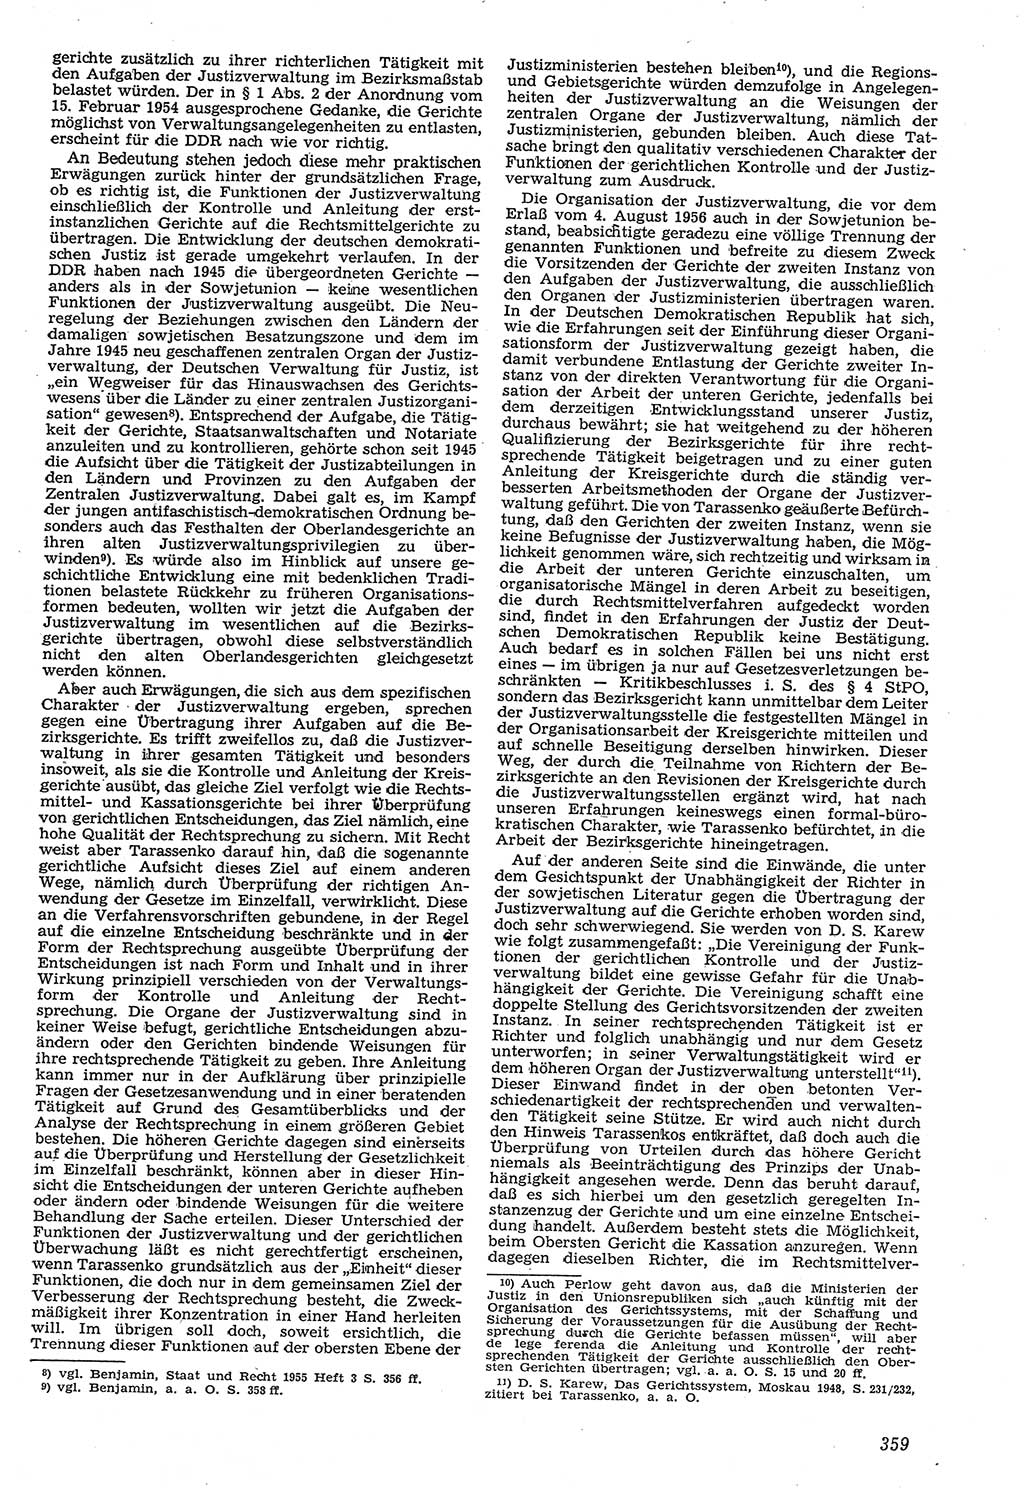 Neue Justiz (NJ), Zeitschrift für Recht und Rechtswissenschaft [Deutsche Demokratische Republik (DDR)], 11. Jahrgang 1957, Seite 359 (NJ DDR 1957, S. 359)